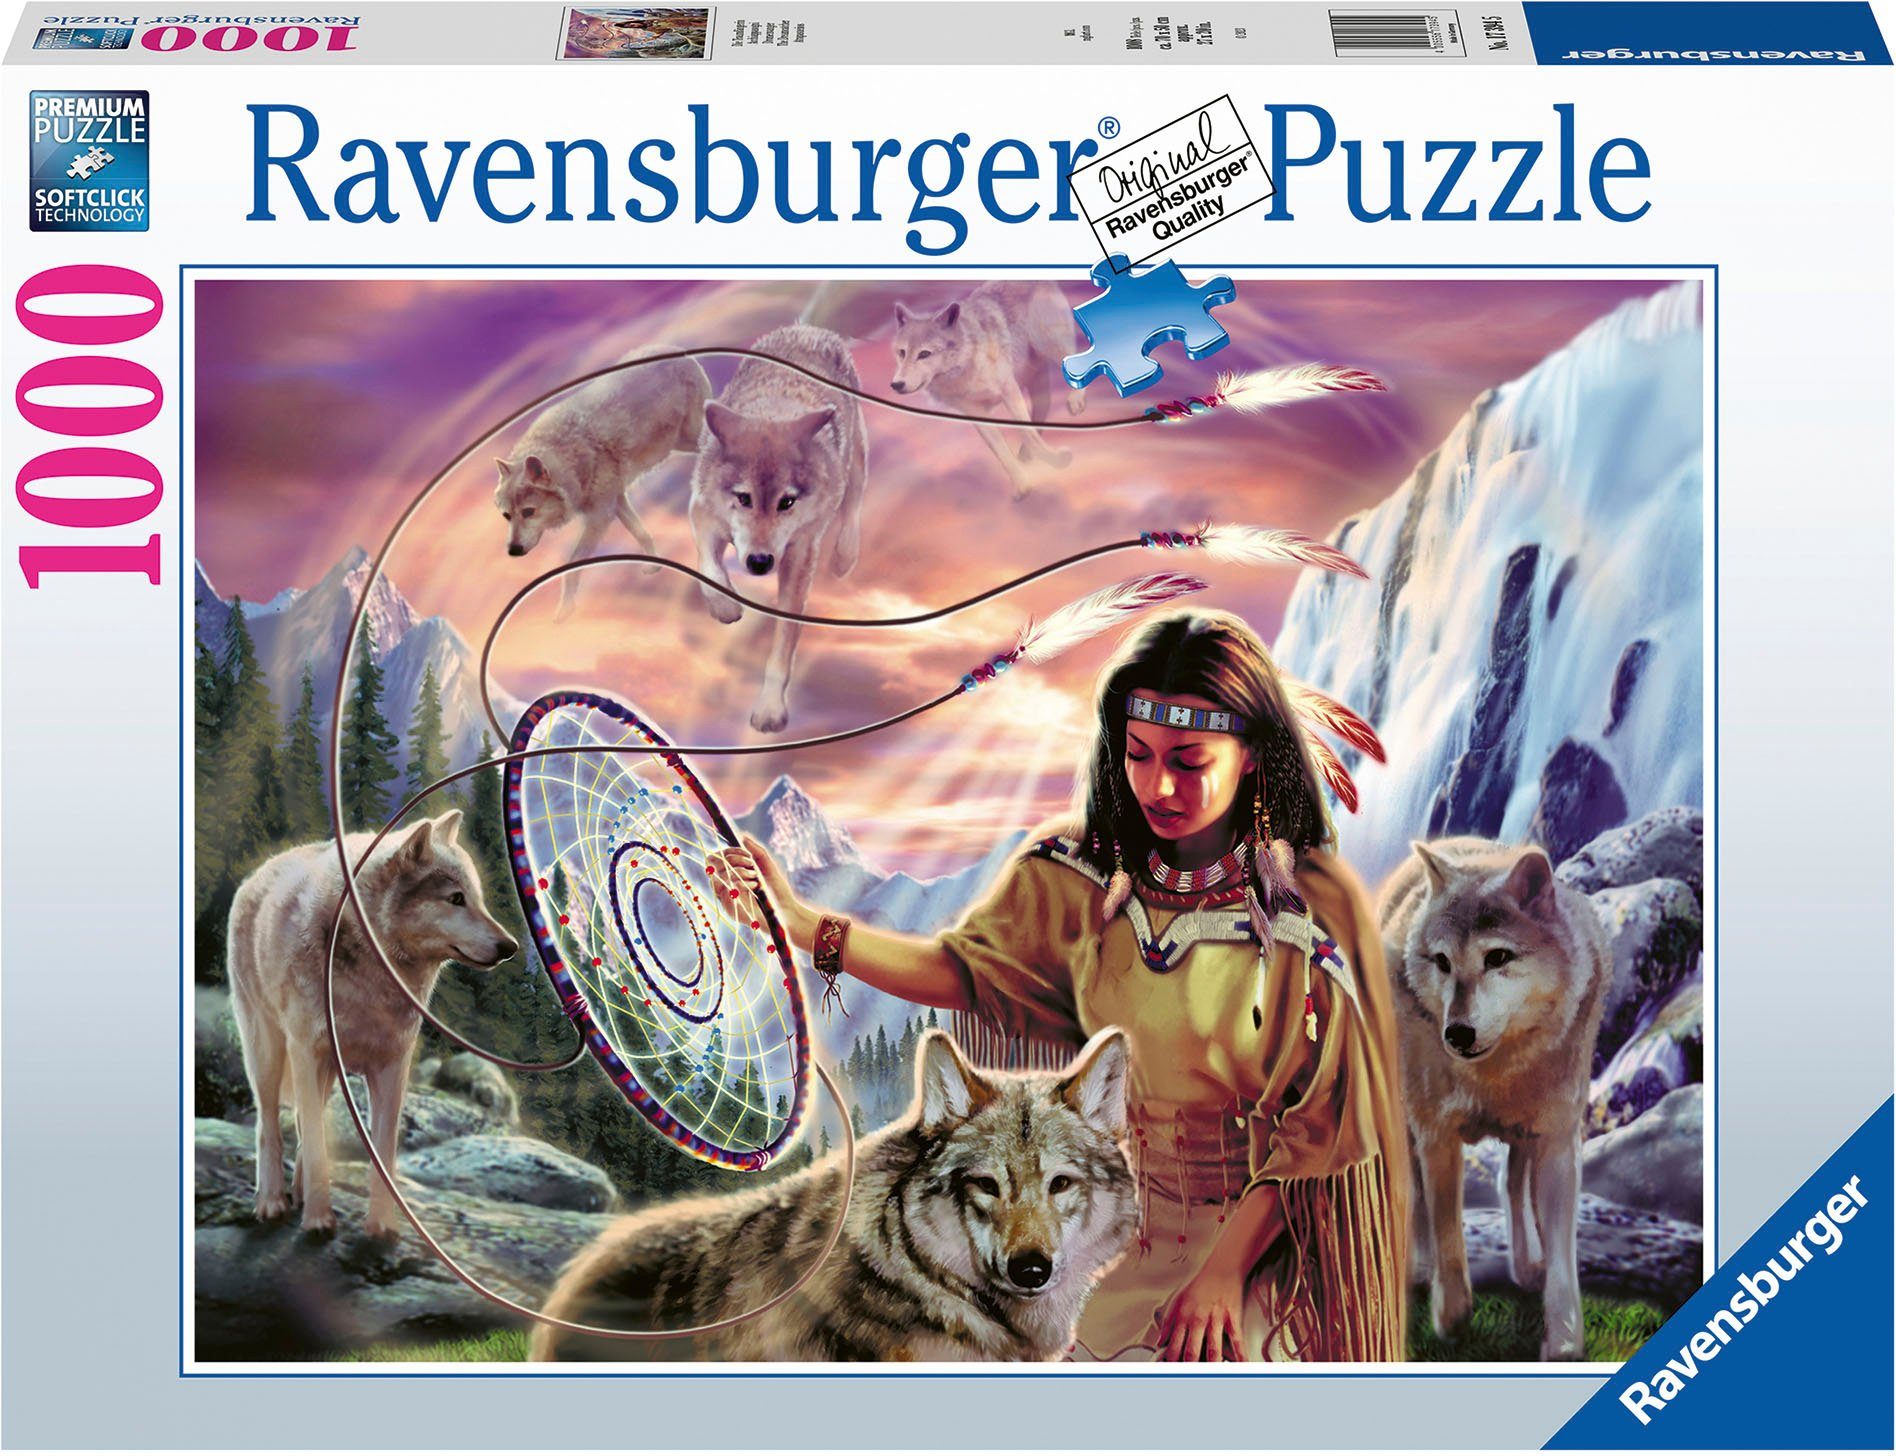 Ravensburger Puzzle Die Traumfängerin, 1000 Puzzleteile, Made in Germany; FSC®- schützt Wald - weltweit